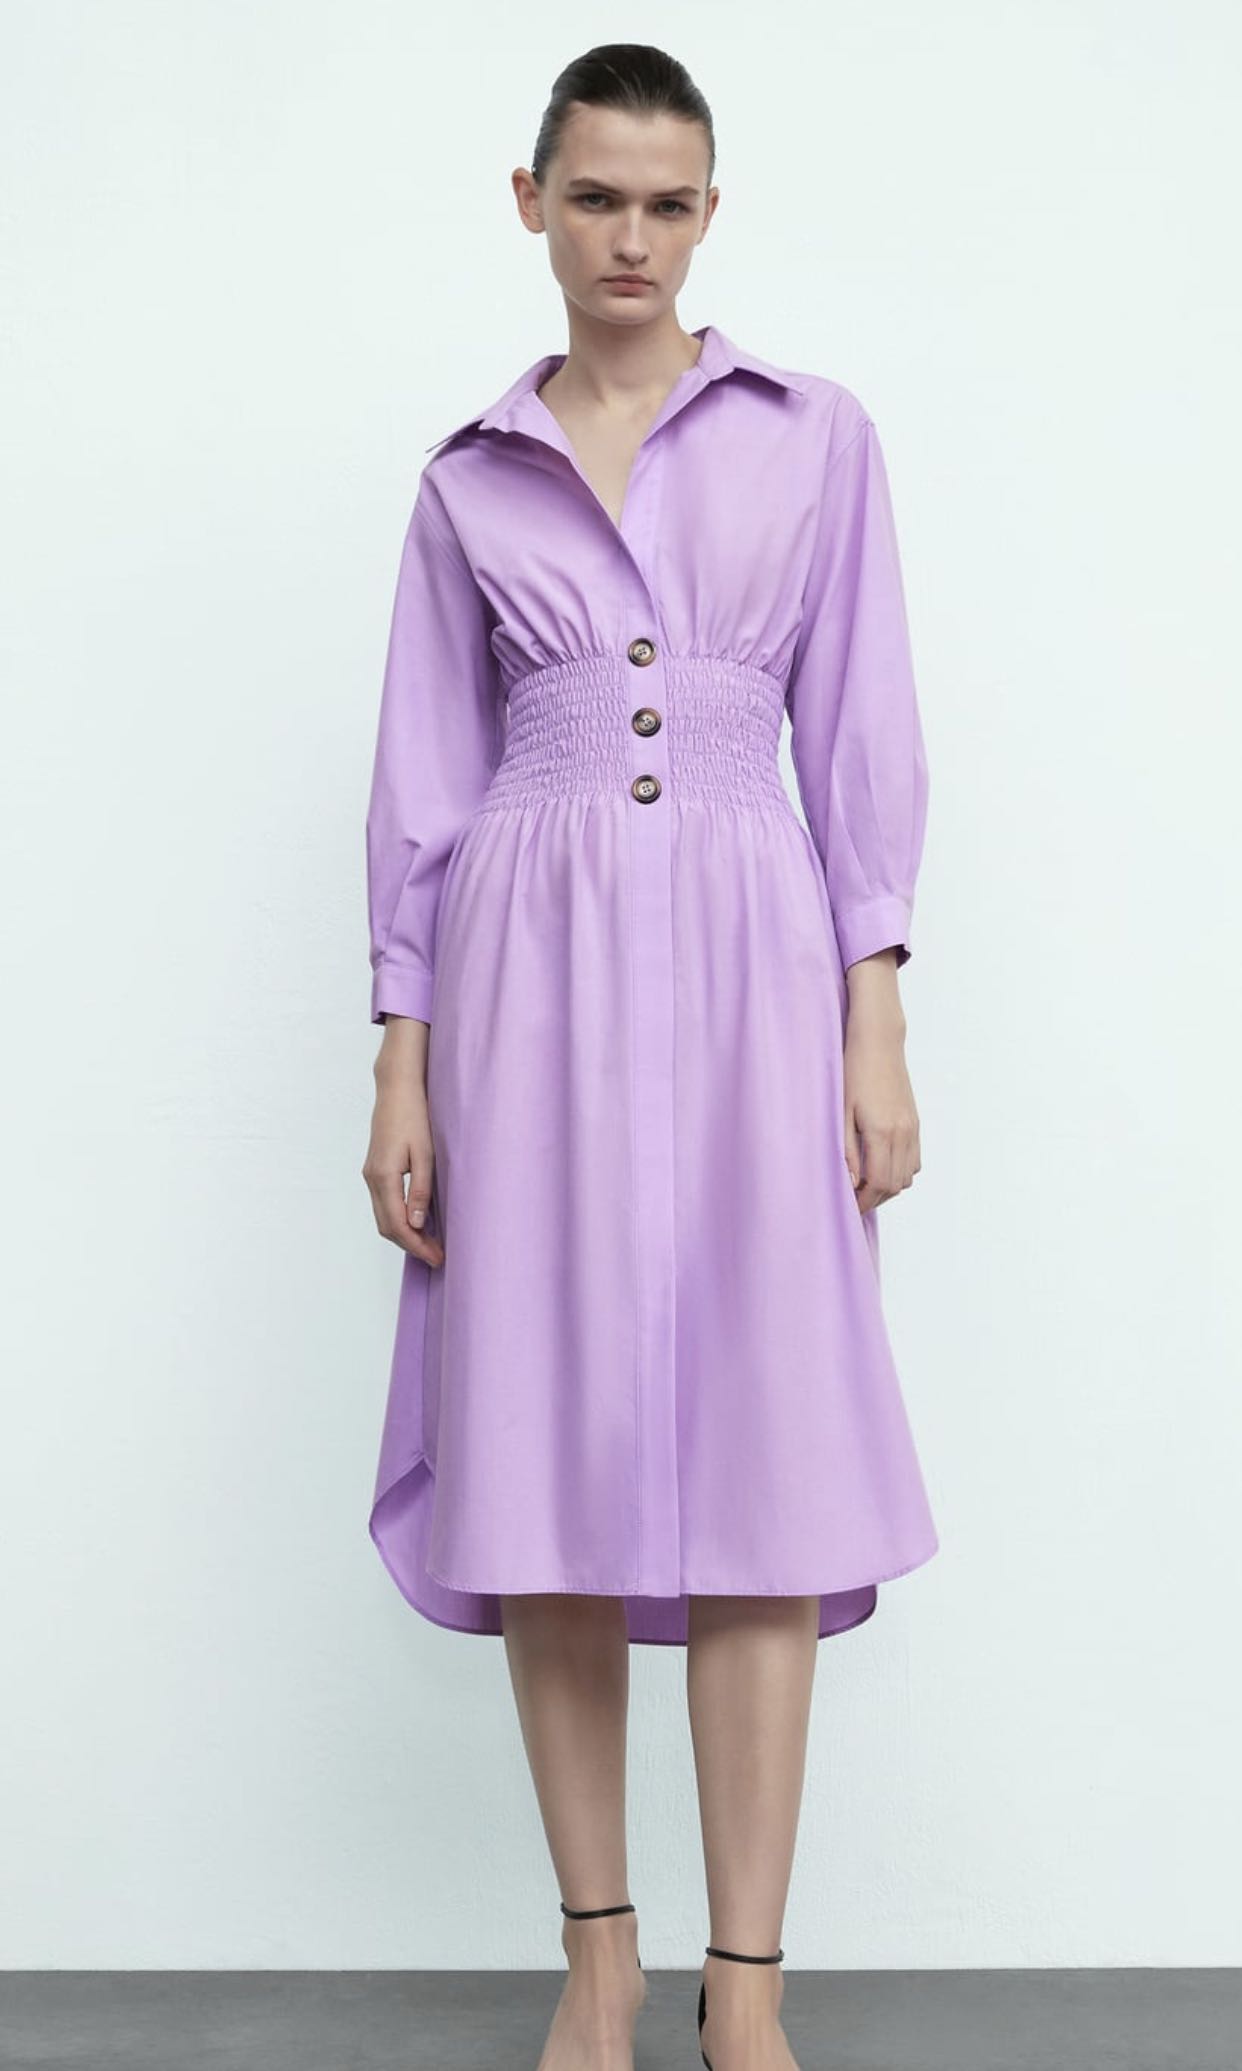 BNWT Zara Lilac Shirt Dress with ...